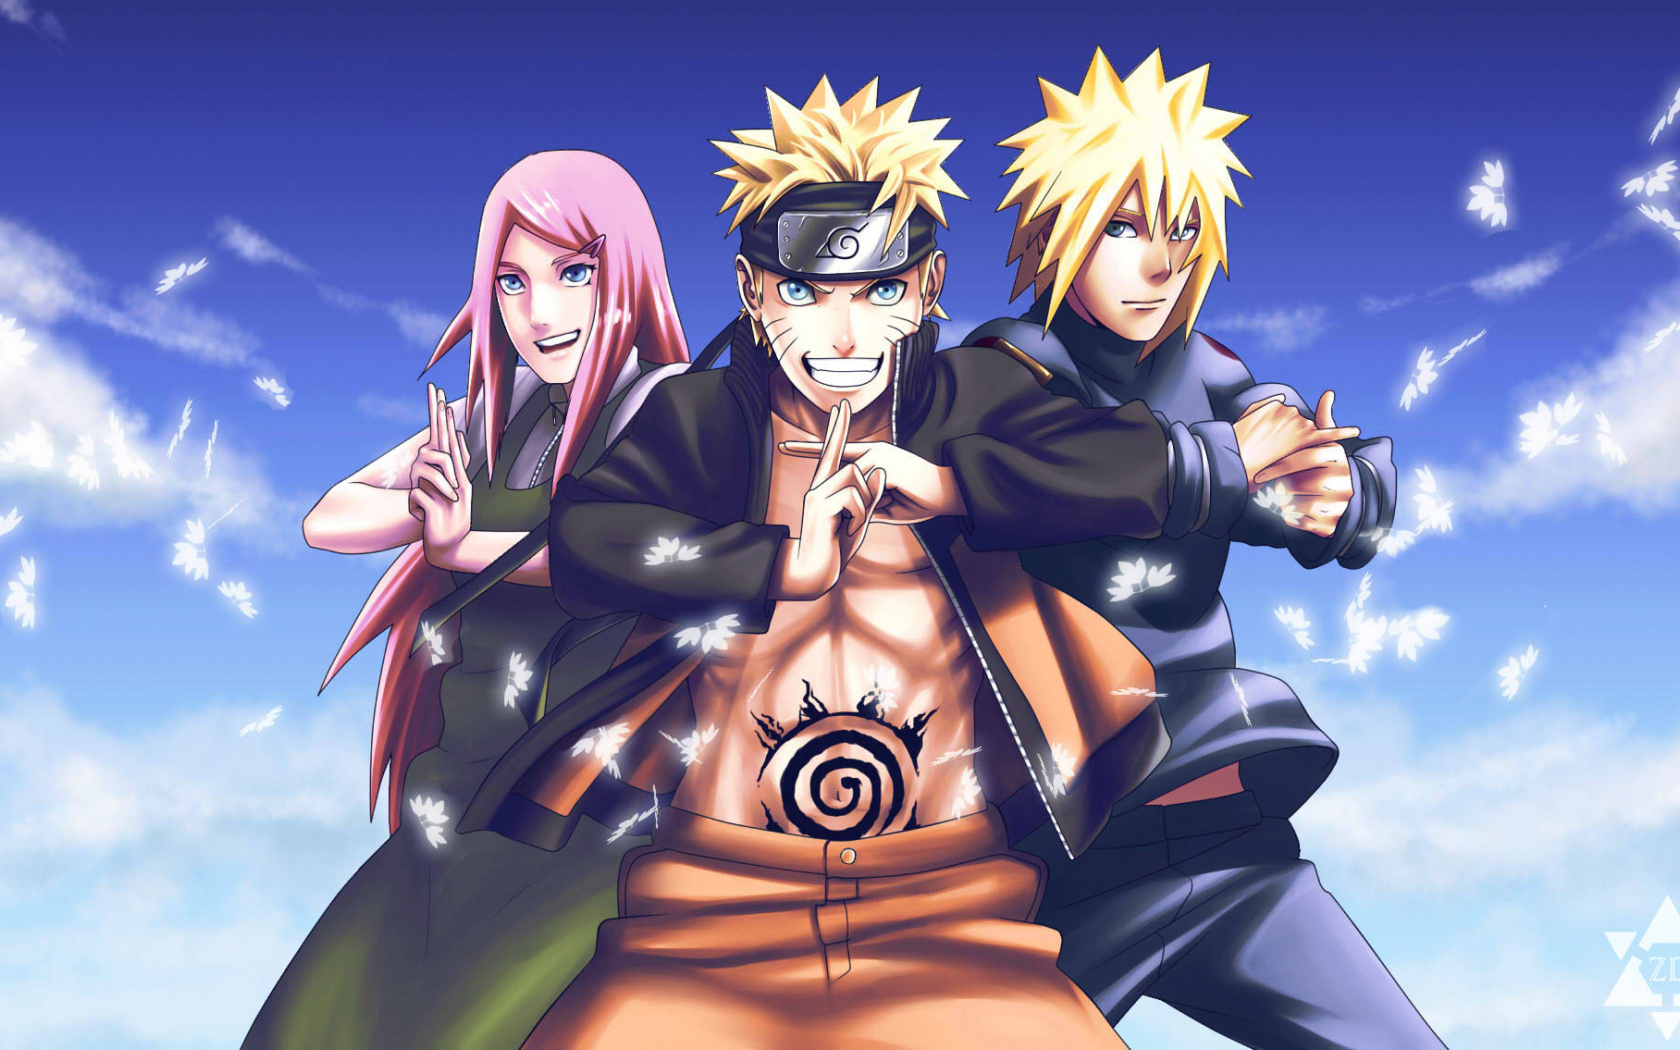 Download Anime, Naruto team, artwork wallpaper, 1680x Widescreen 16: Widescreen